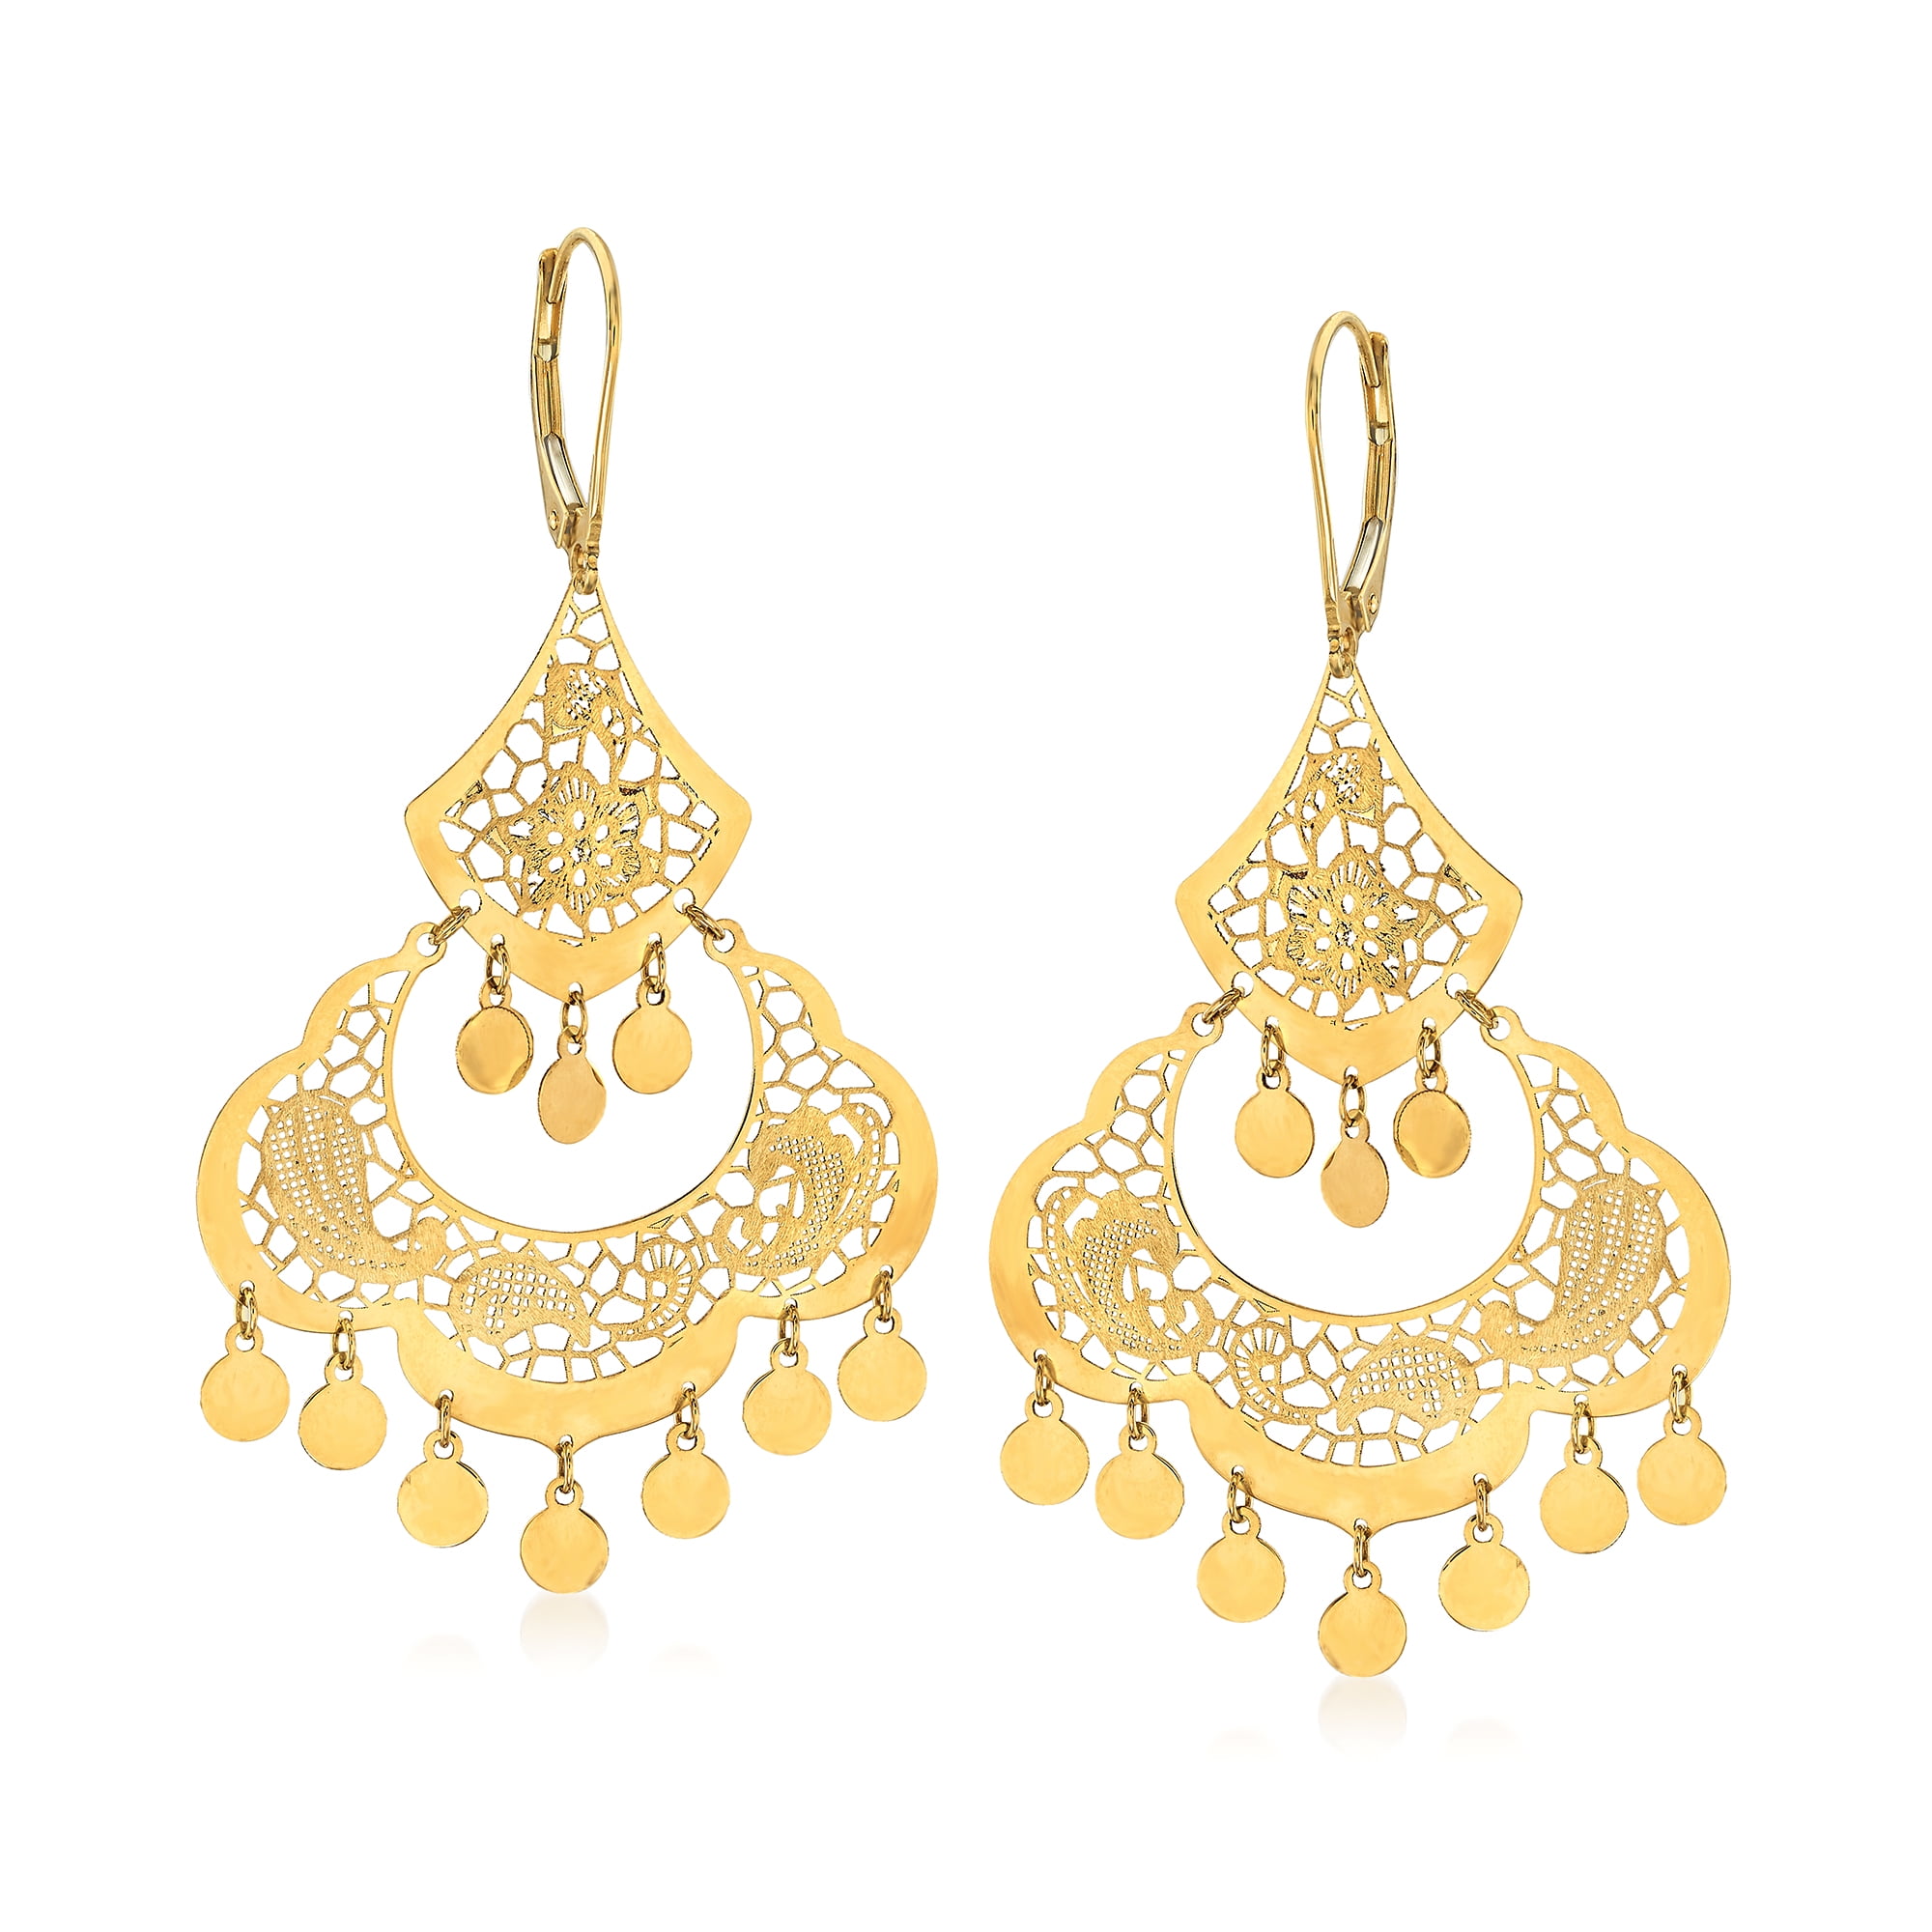 Juliana vintage chandelier earrings – MDVII